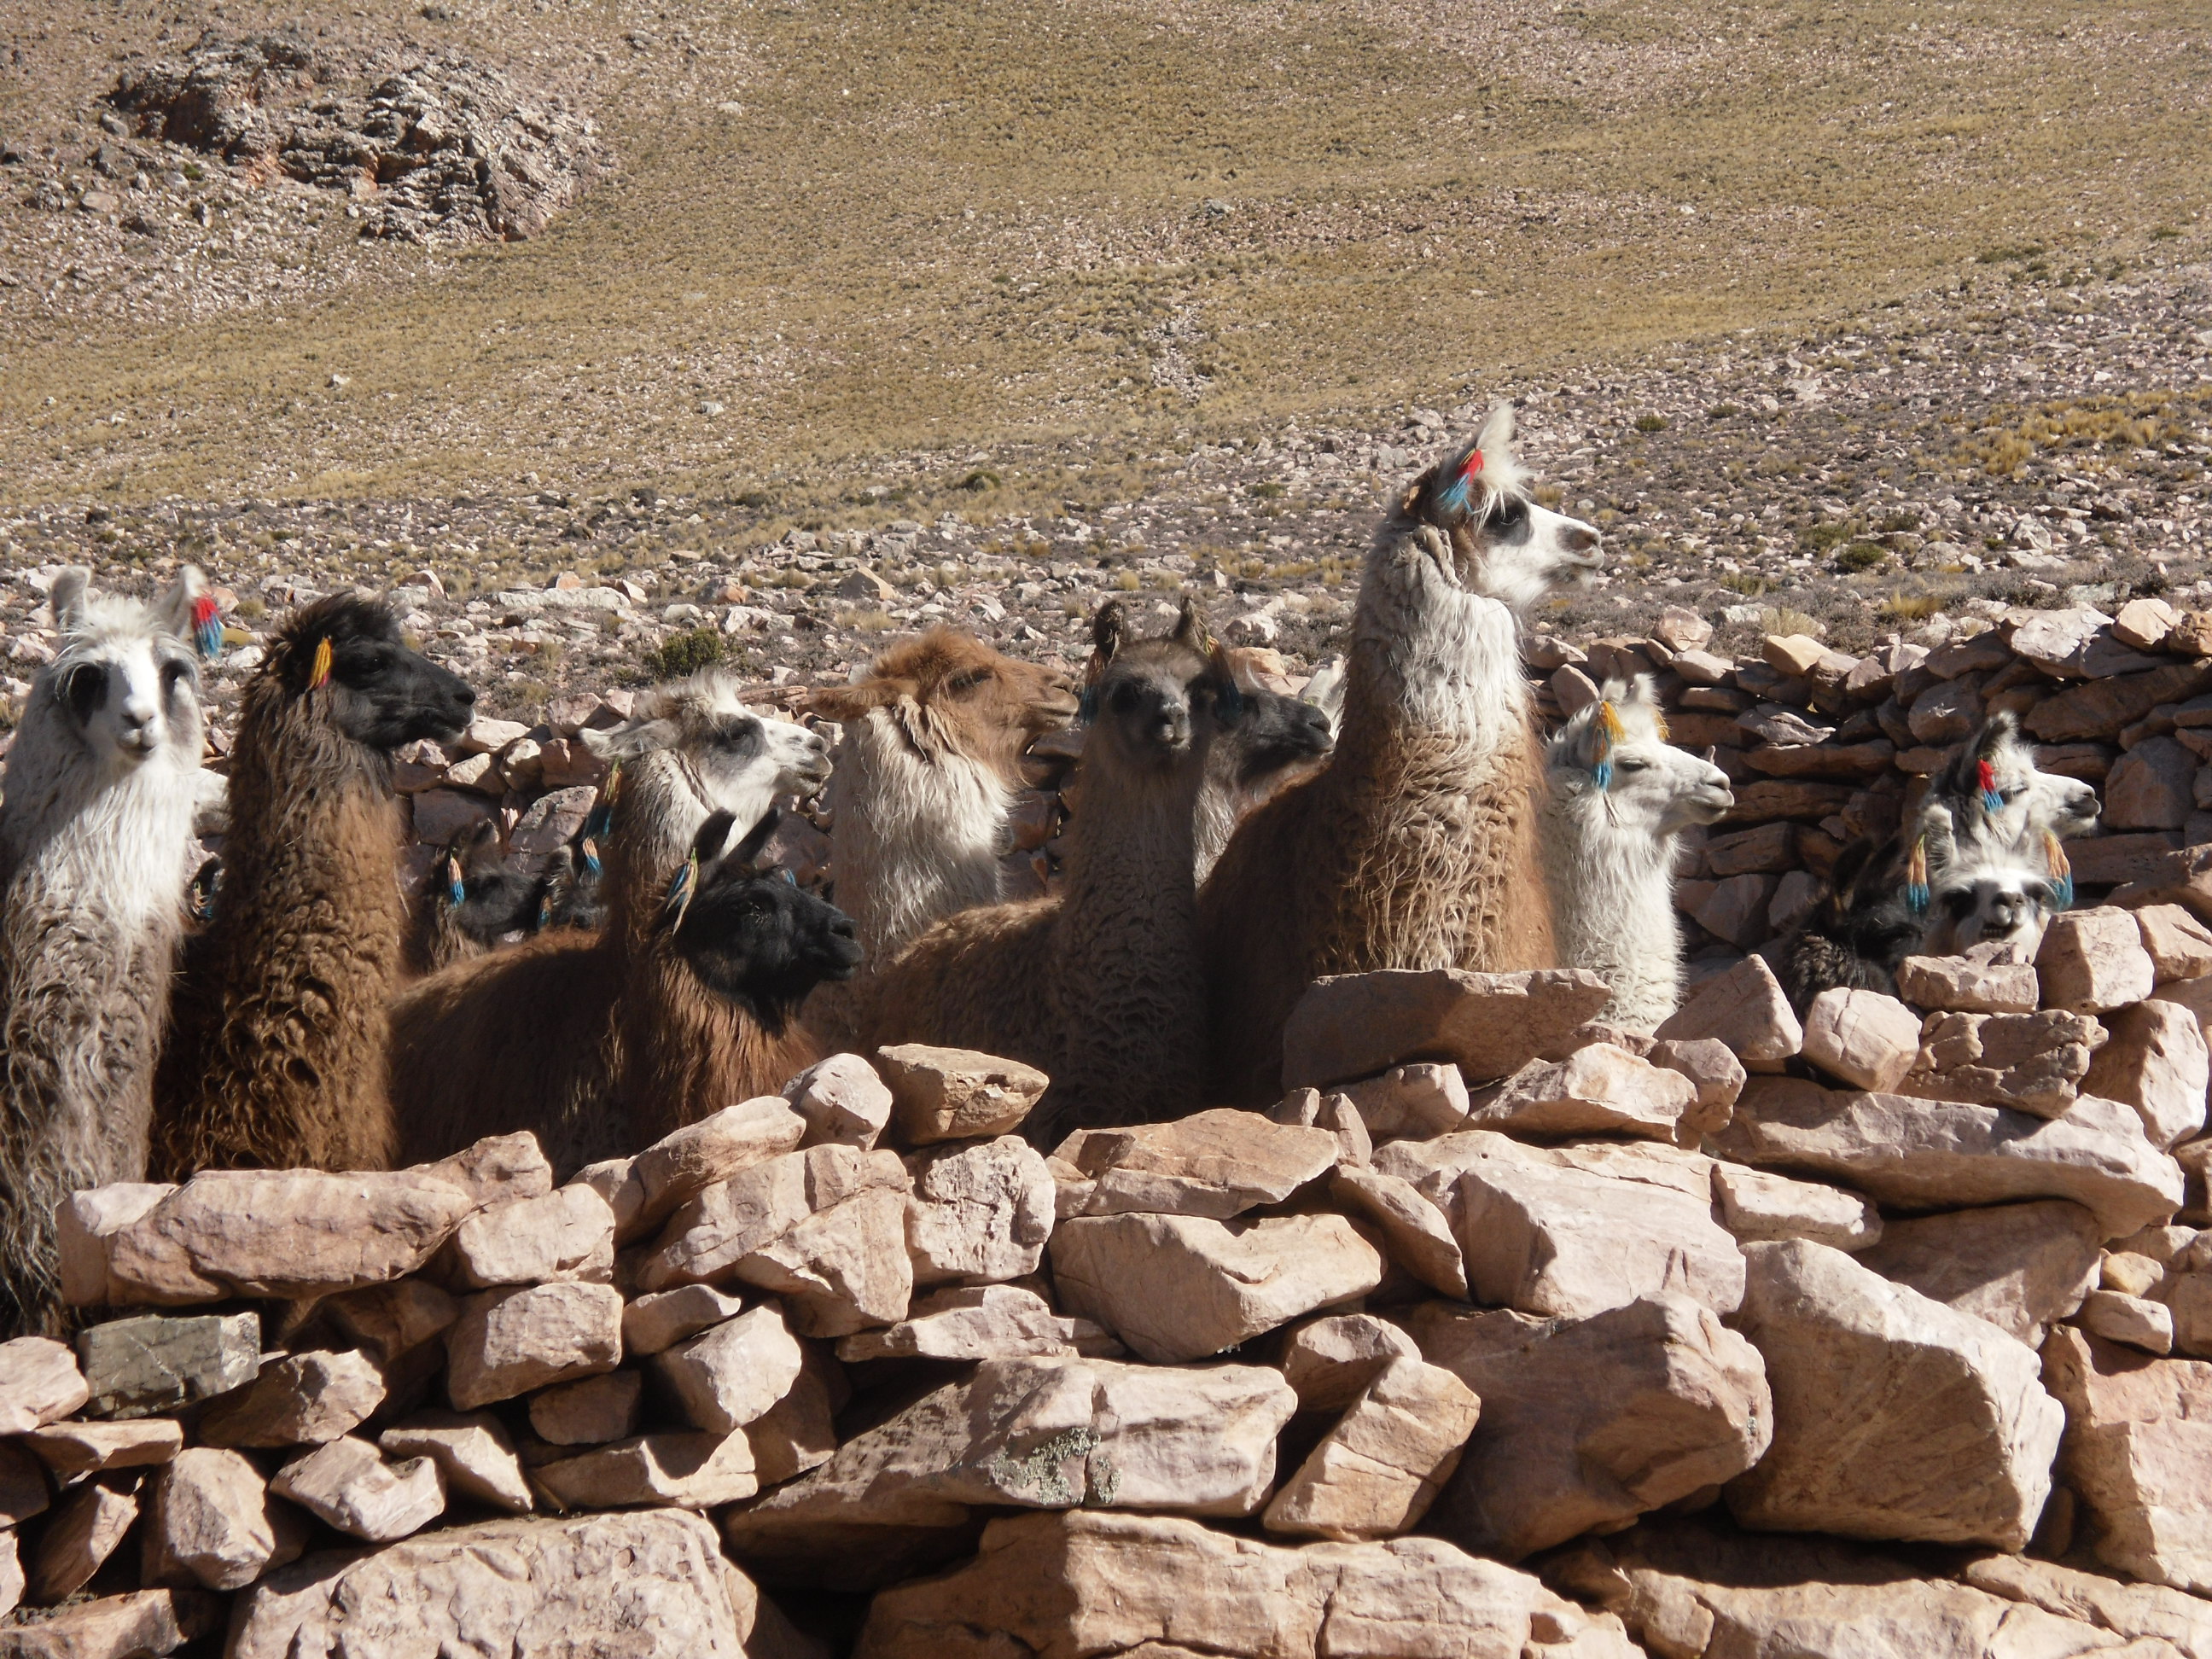 Llamas near to Salinas Grande (Great Salt Flats) Argentina